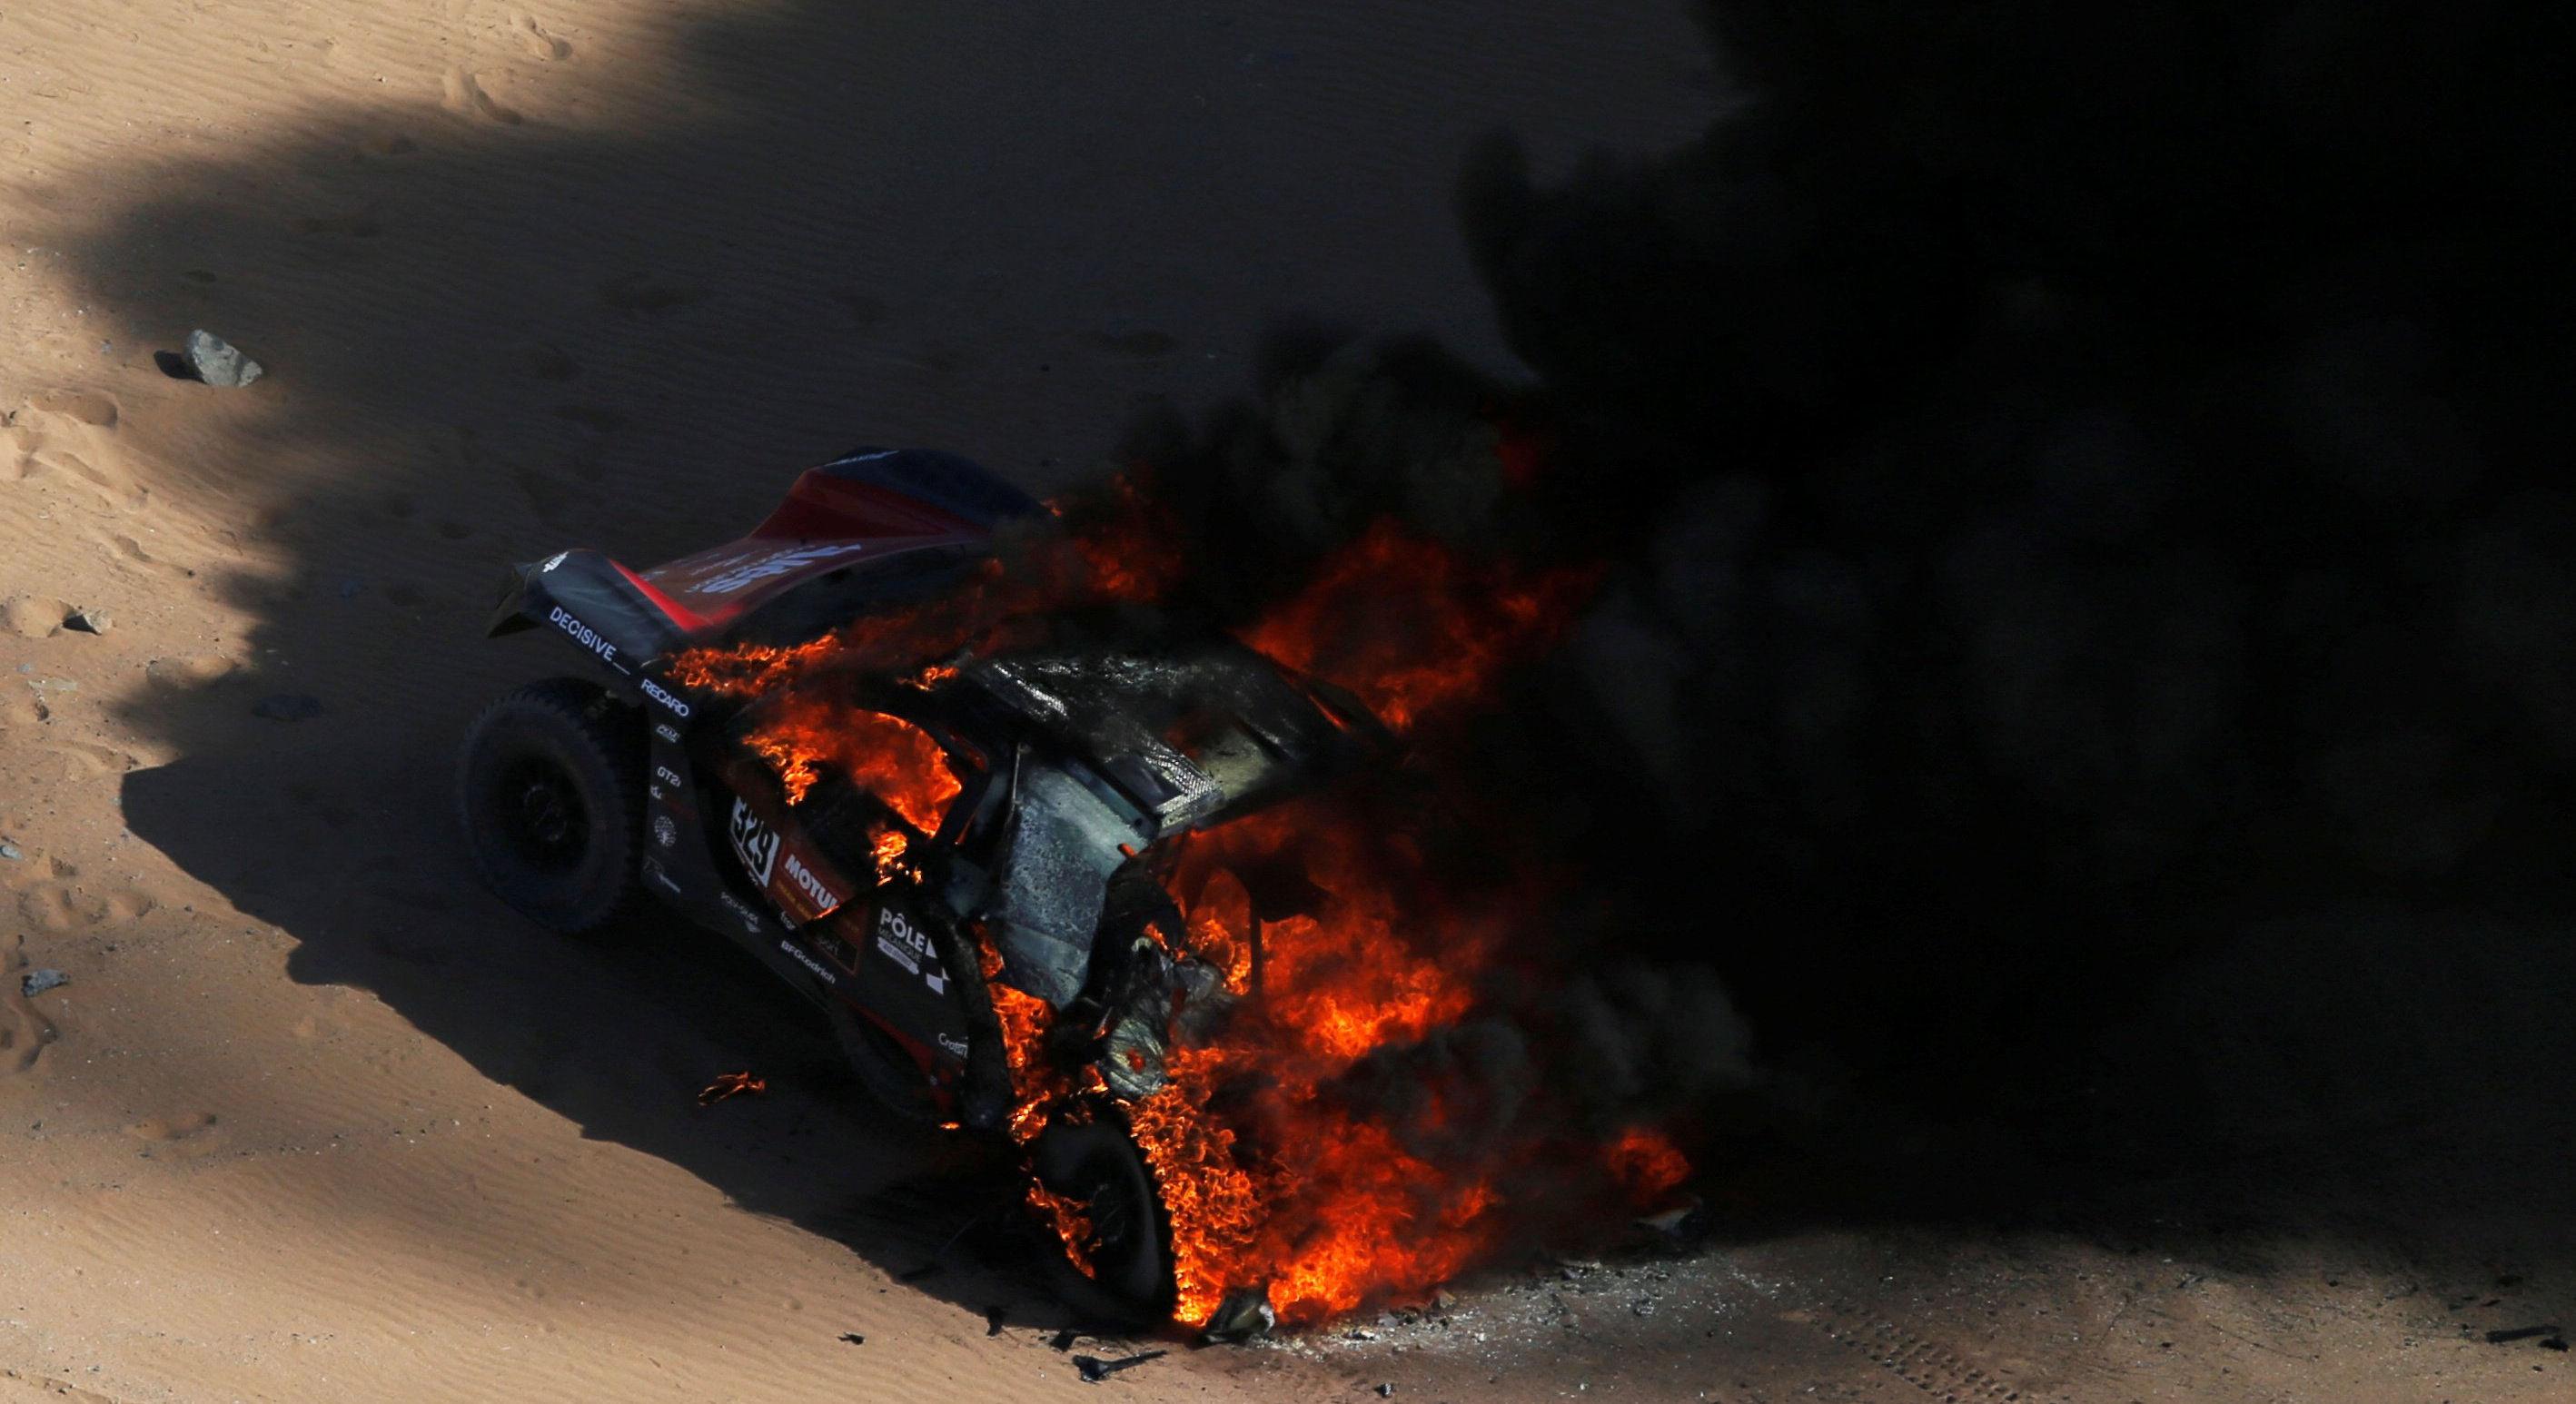 La camioneta del francés Romain Dumas ardiendo en llamas. (Foto: AFP)